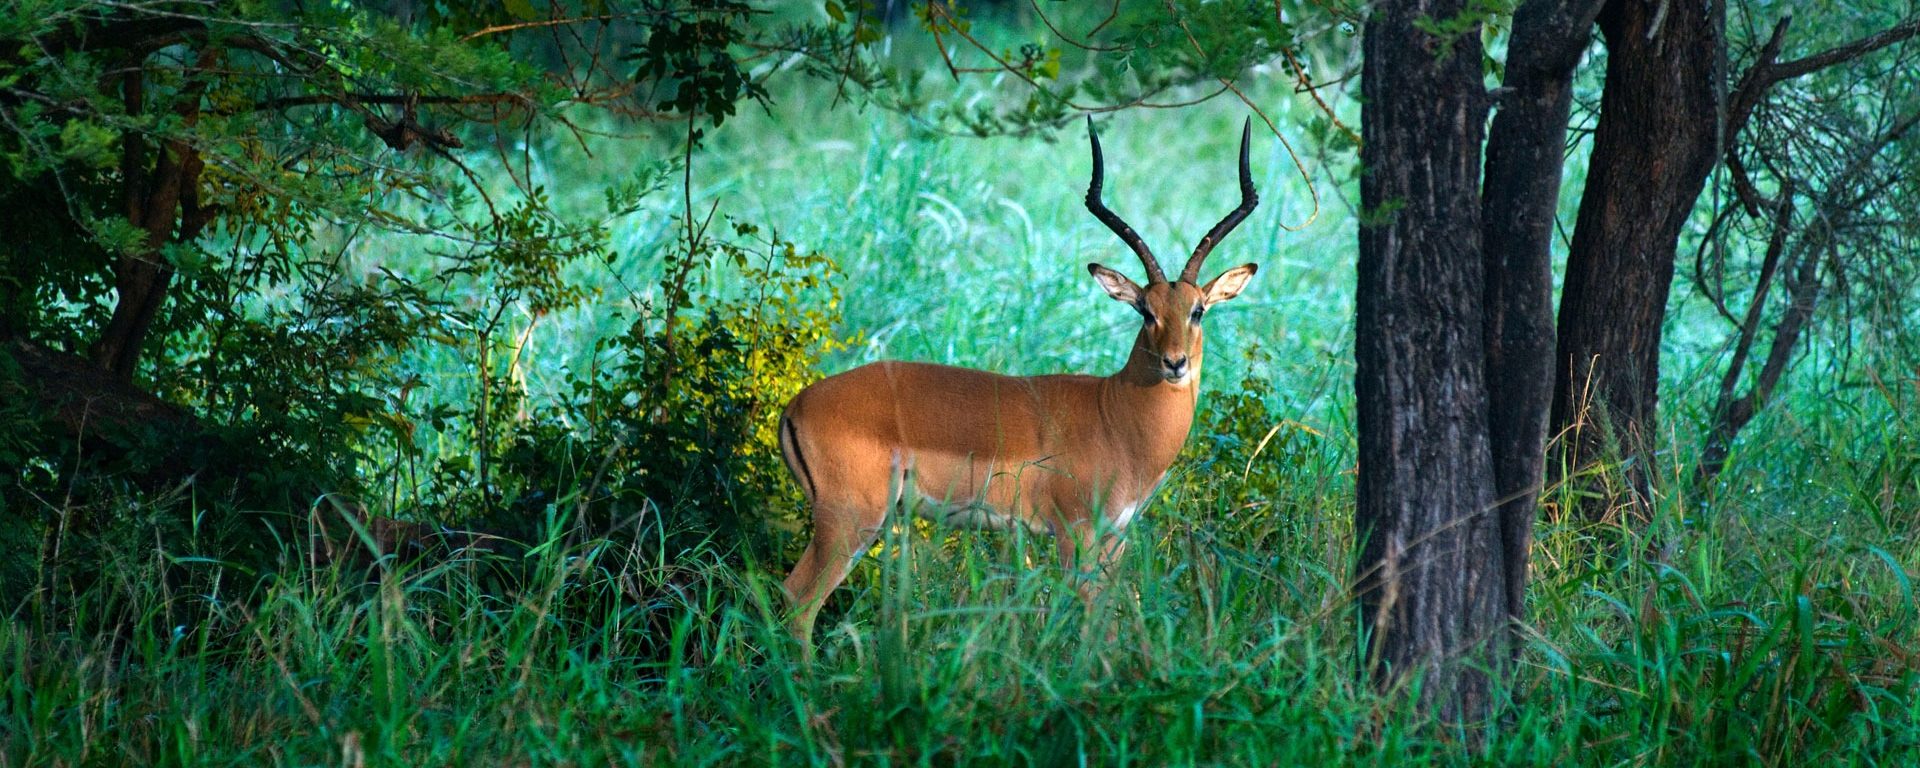 Impala in Gorongosa National Park, Mozambique